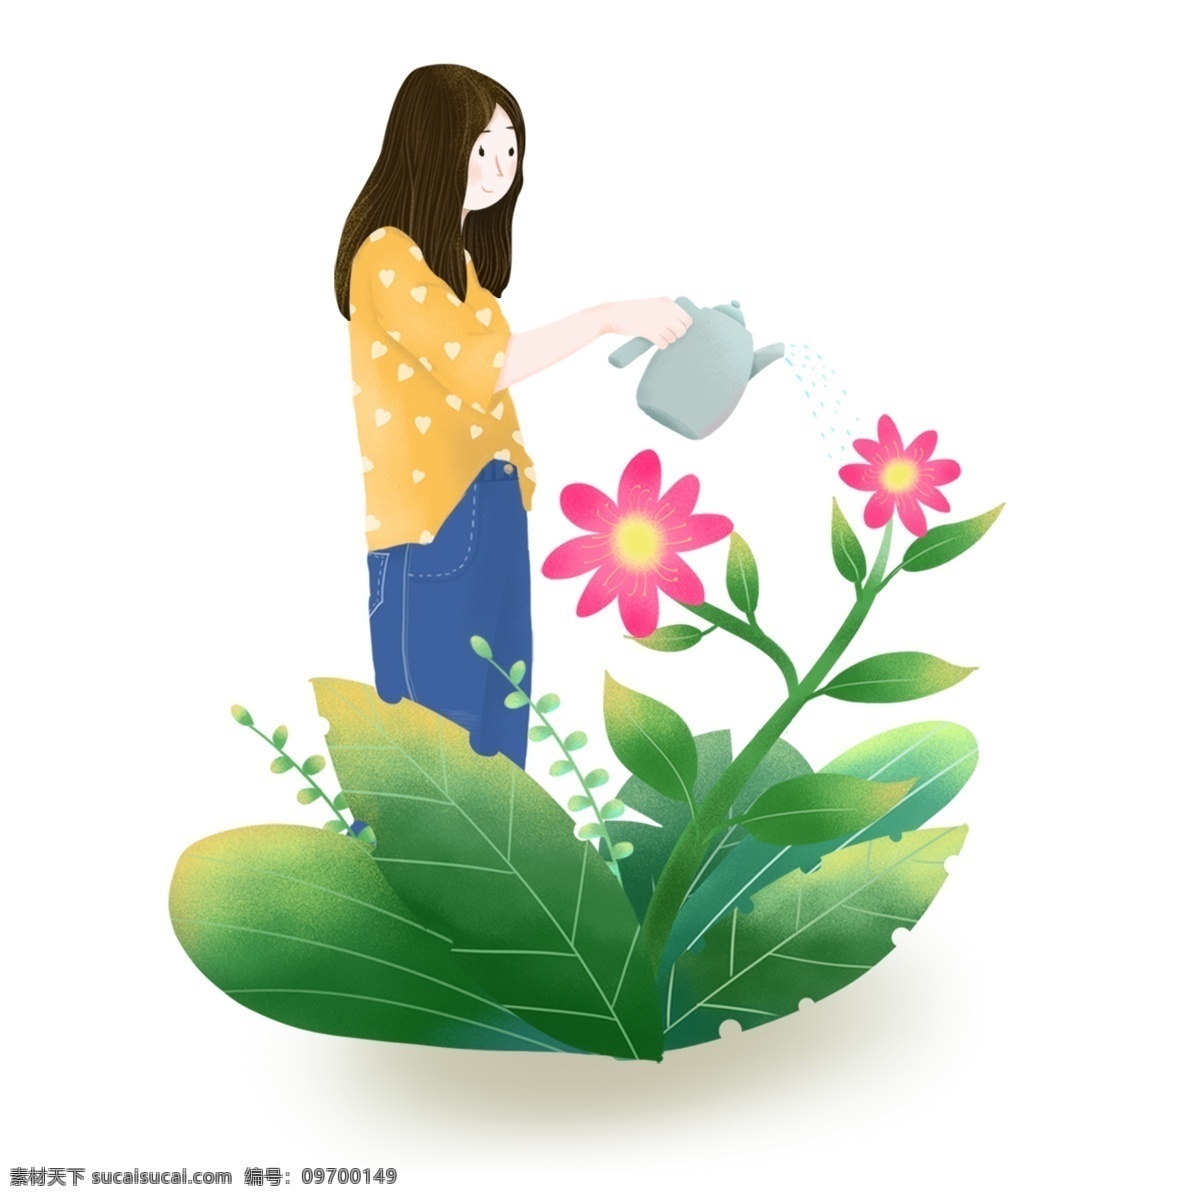 手绘 春天 绿植 鲜花 浇水 女孩 人物 元素 手绘植物 手绘女孩 人物元素 植物元素 鲜花元素 春天元素